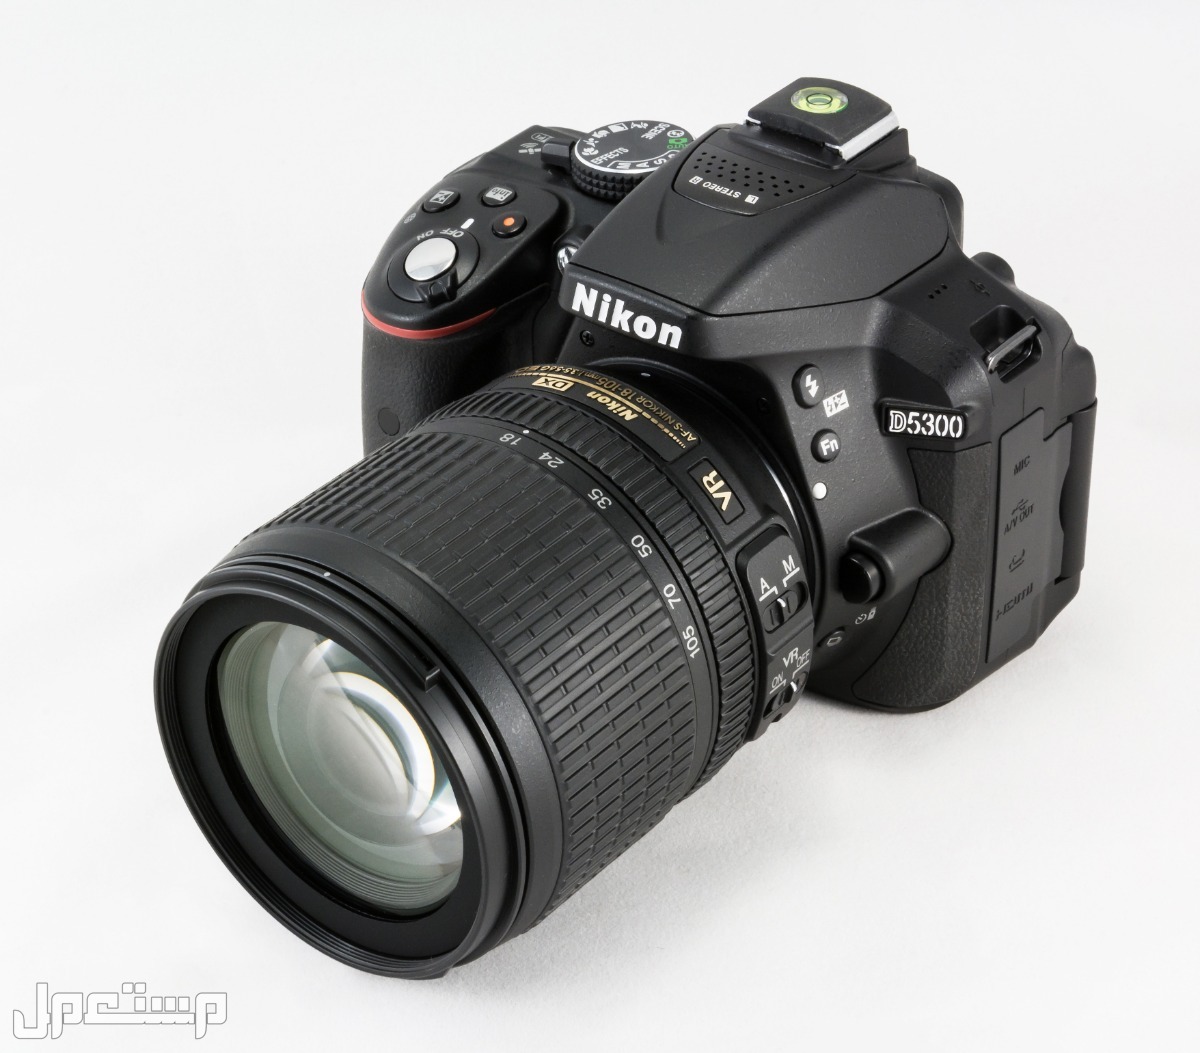 مواصفات ومميزات وأسعار أفضل أنواع كاميرات نيكون للمحترفين في البحرين كاميرا Nikon D5300